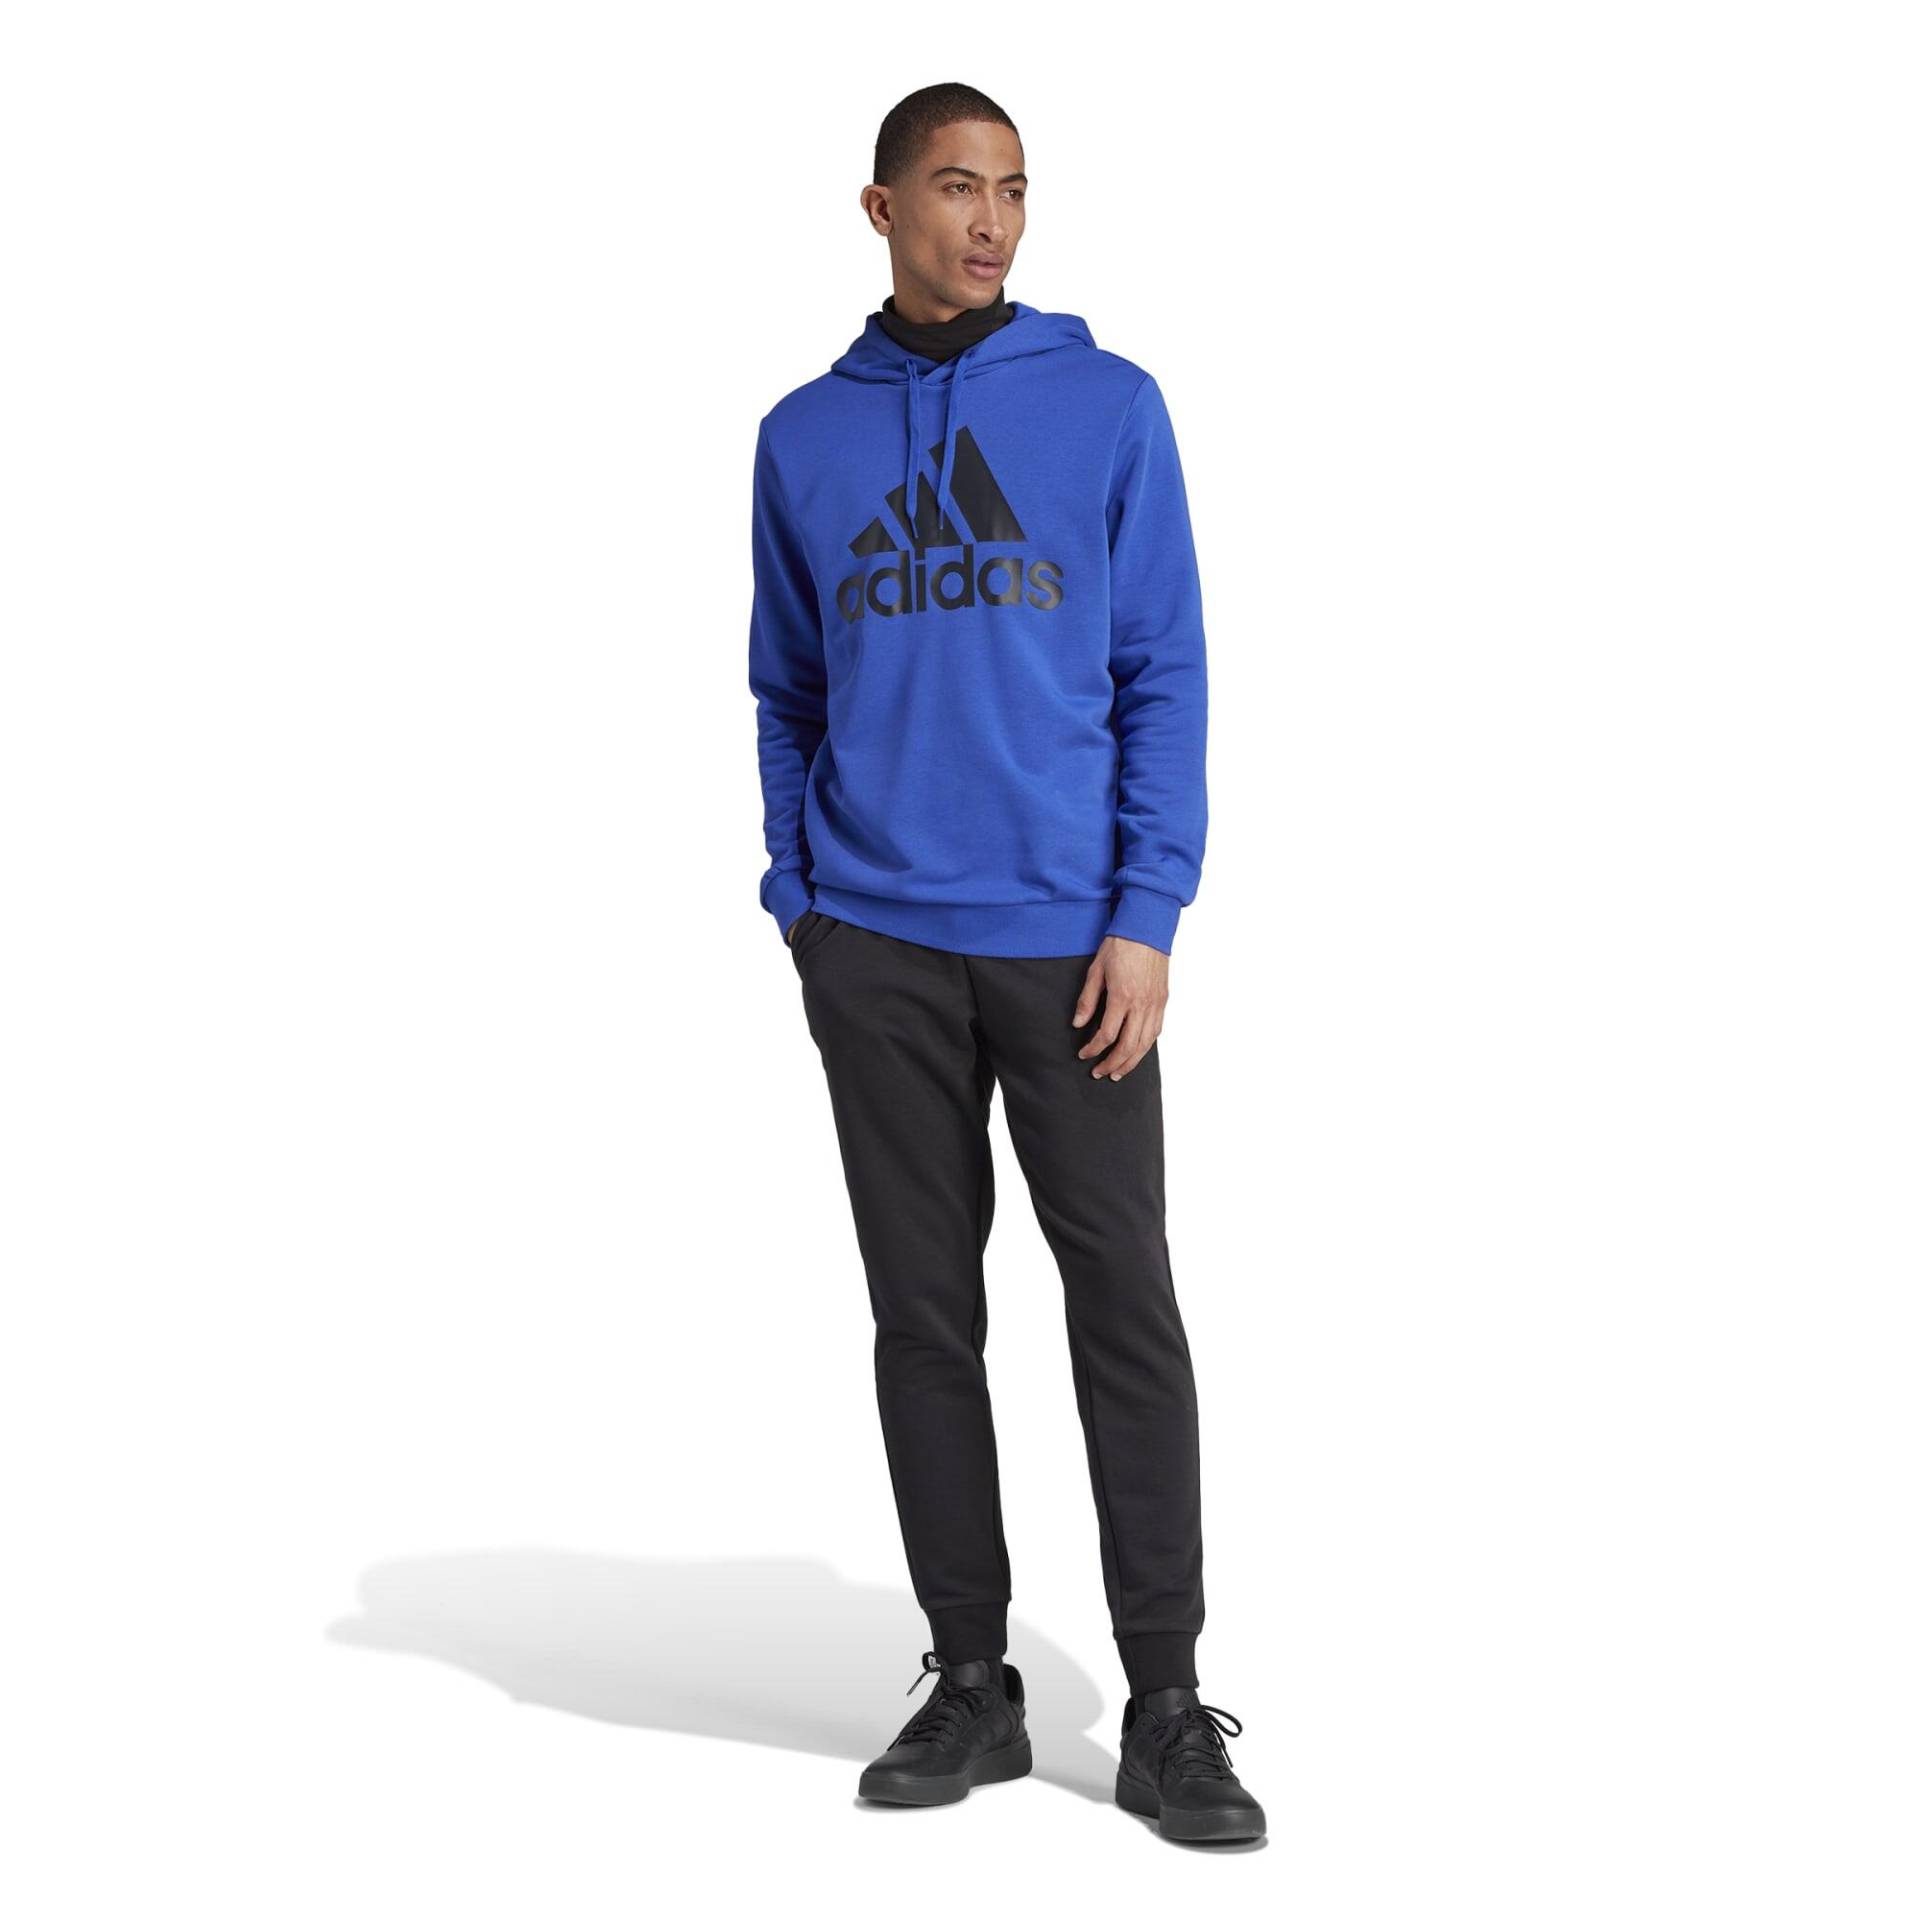 Adidas Trainingsanzug Herren - blau/schwarz von Adidas